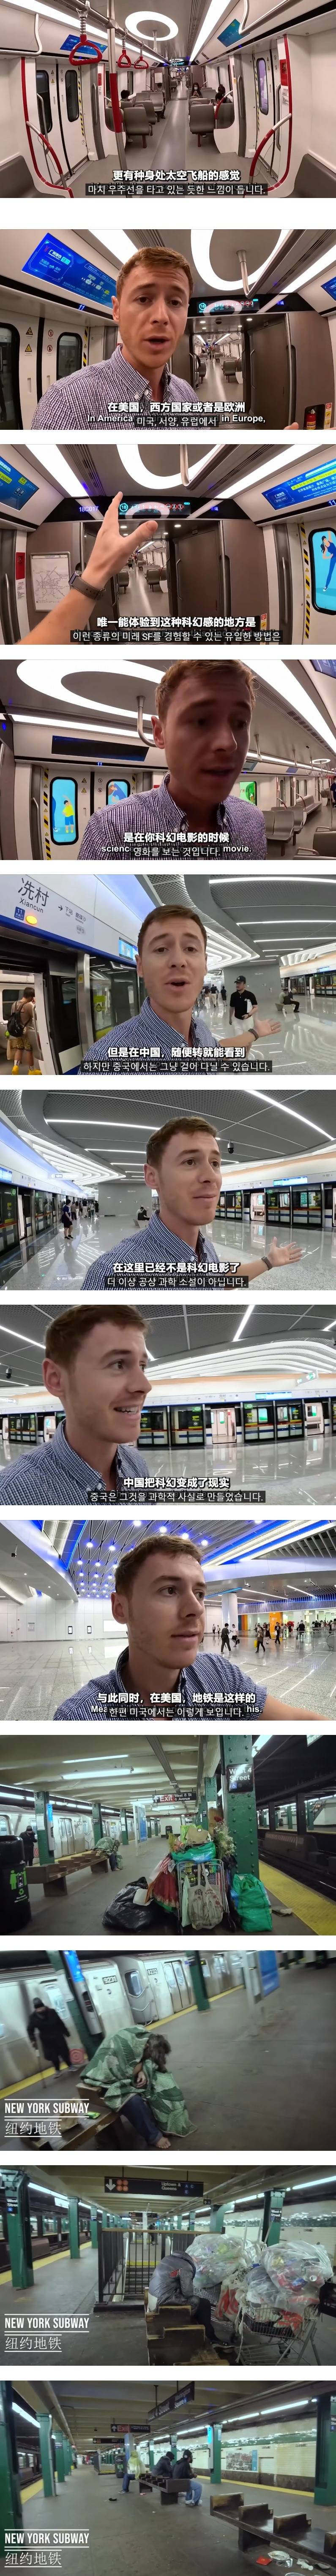 중국과 미국 지하철 차이